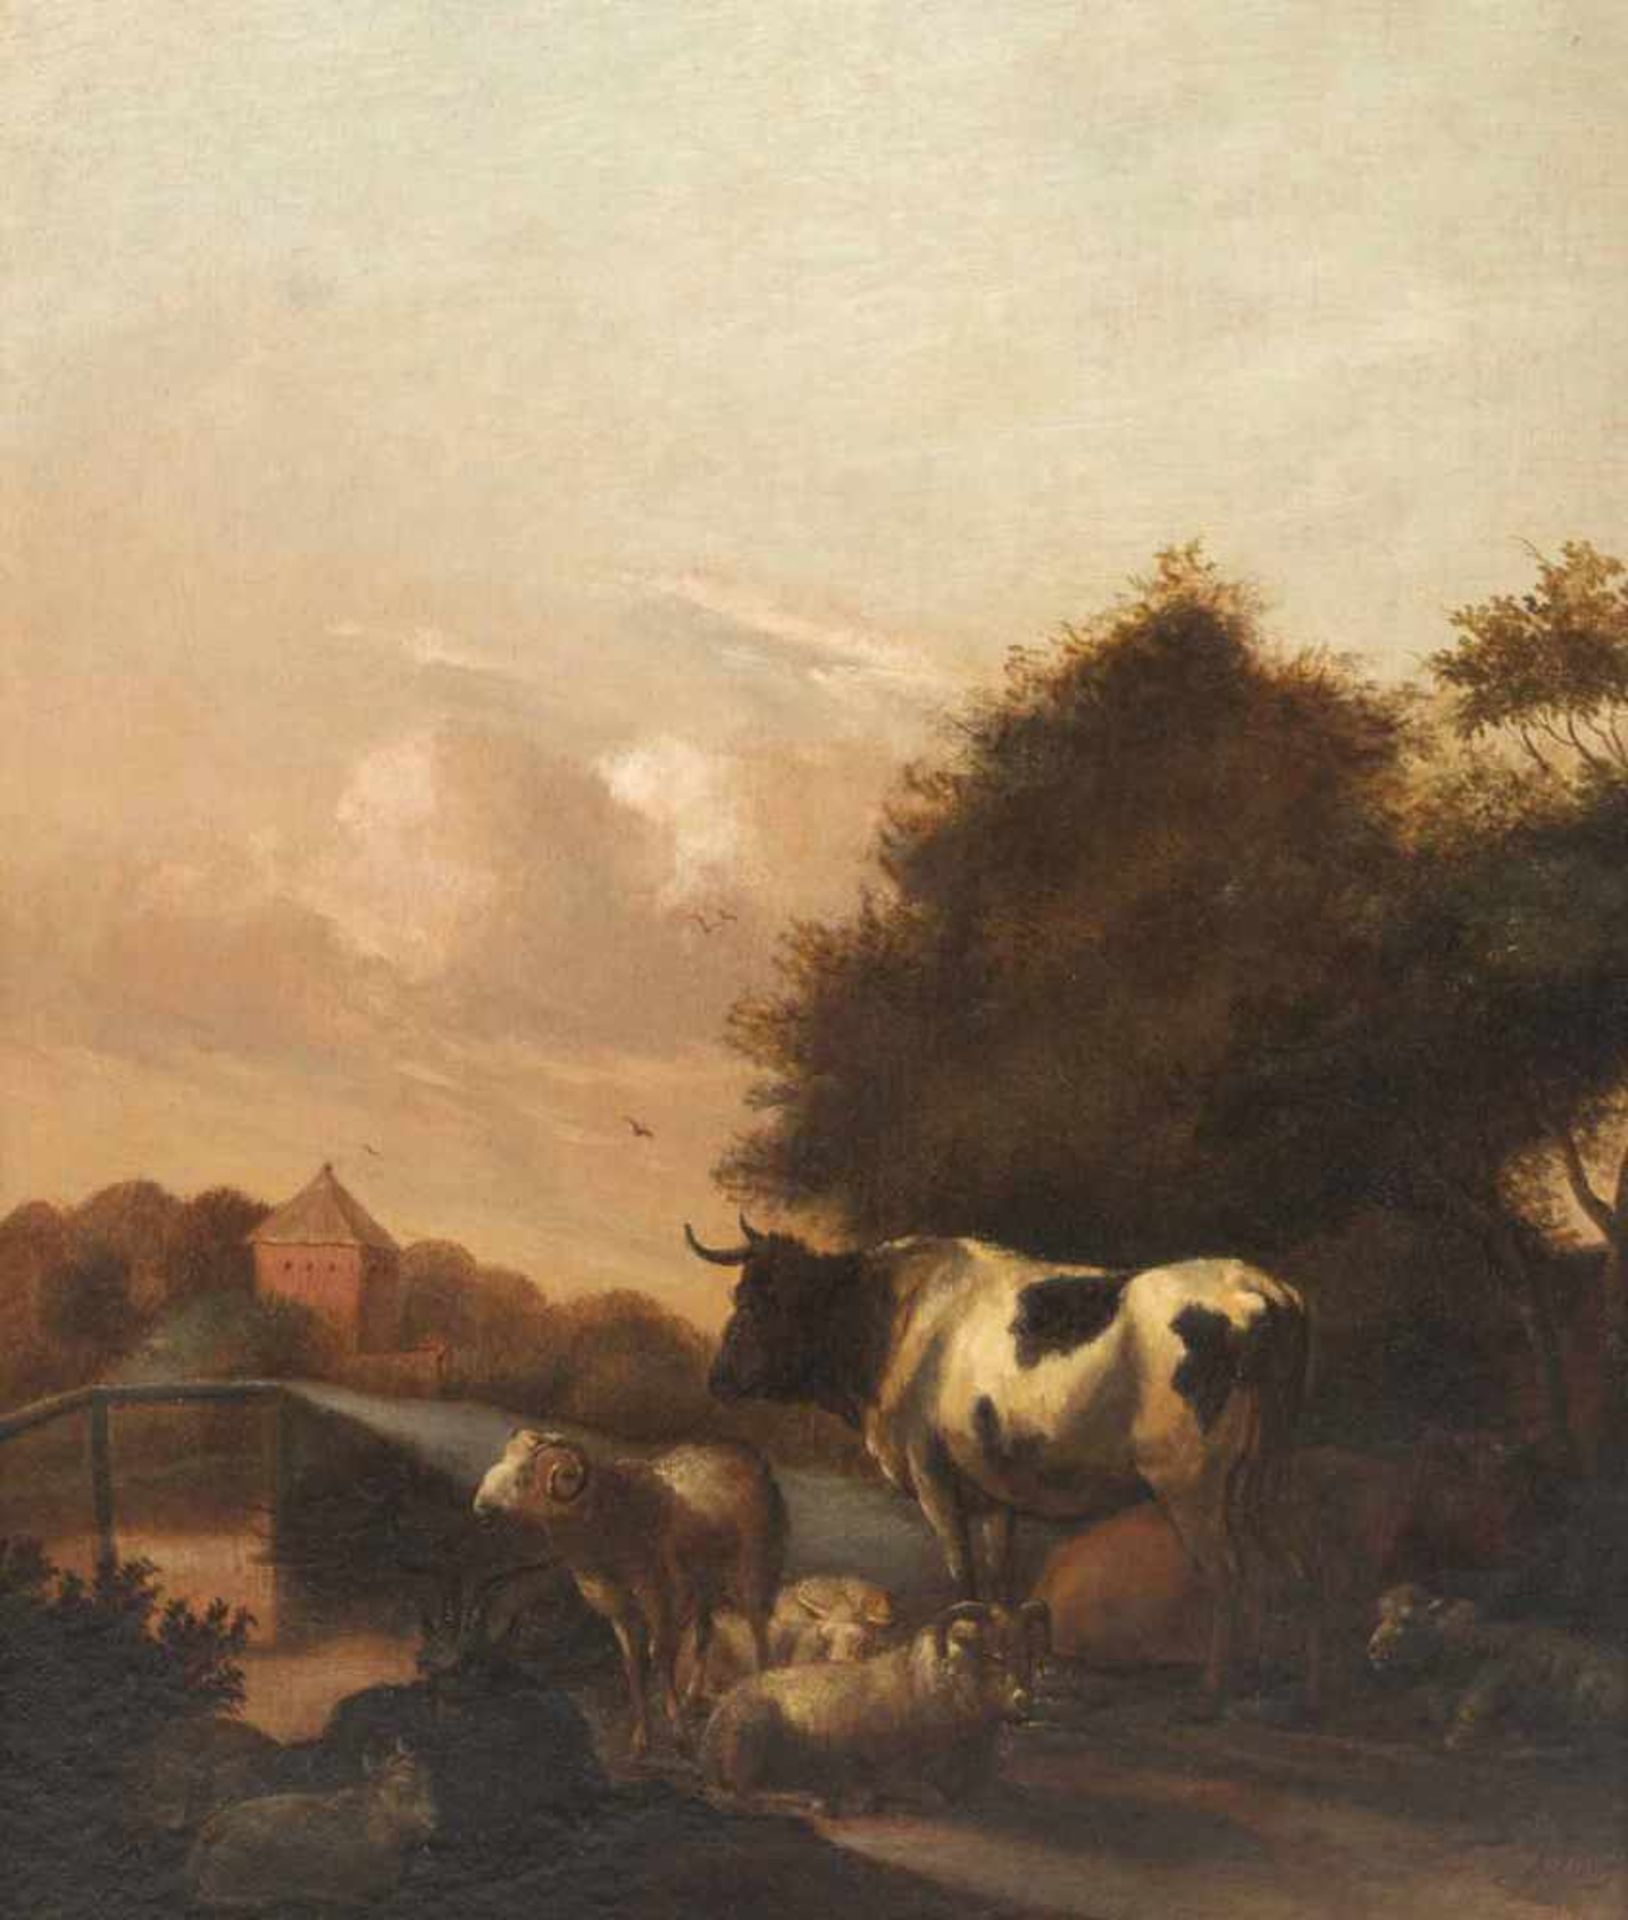 Klomp, Albert Jansz.Amsterdam 1618 - 168842 x 35 cmZwei abendliche Landschaften mit Tierherde. - Bild 3 aus 3